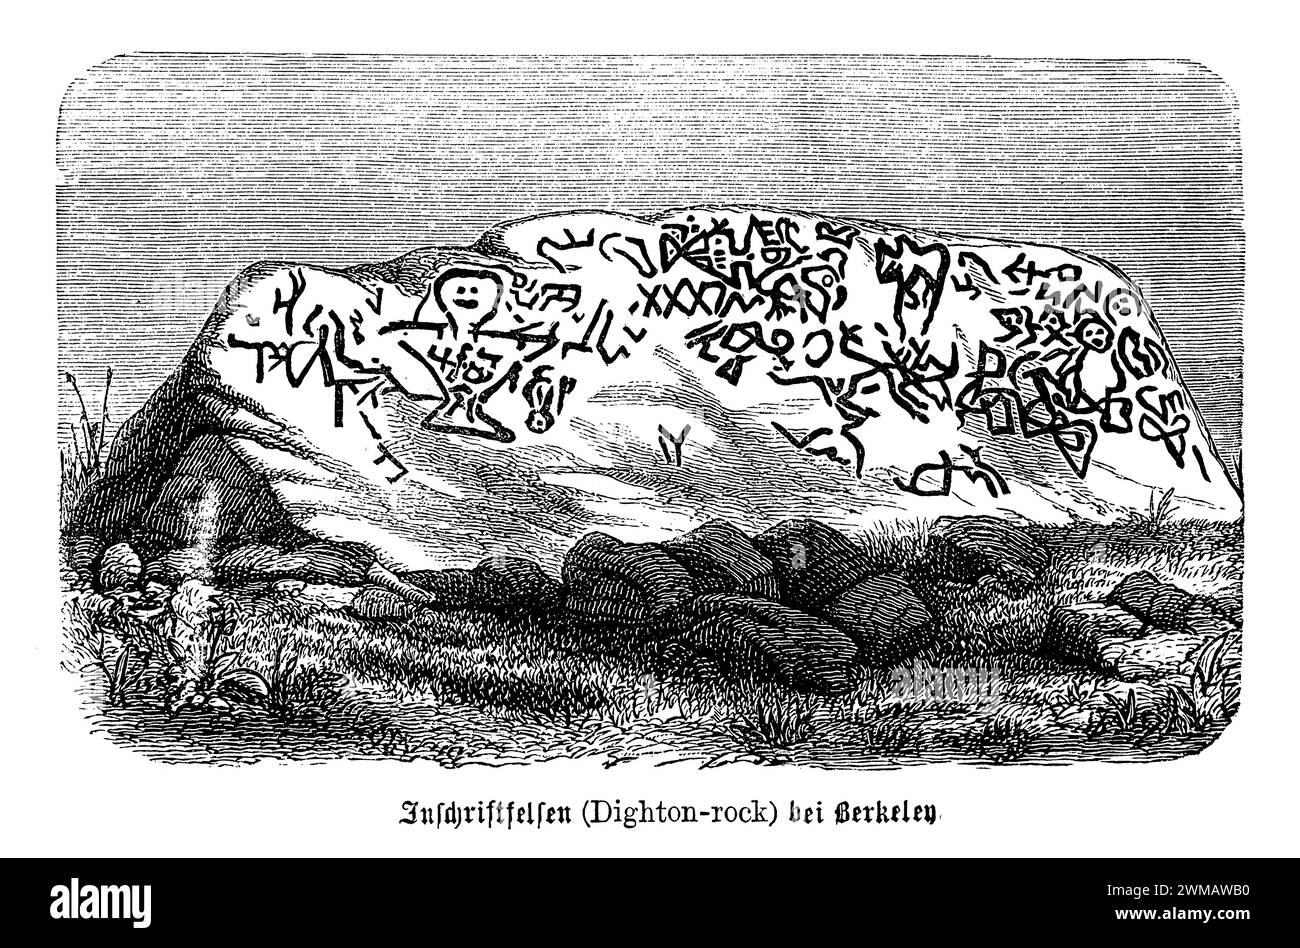 I petroglifi di Dighton Rock, situati a Berkley, Massachusetts, sono una collezione di misteriose iscrizioni e incisioni trovate su un masso di 40 tonnellate sulle rive del fiume Taunton. Questi petroglifi hanno affascinato archeologi, storici e appassionati per secoli, con teorie sulle loro origini che vanno dalle tribù dei nativi americani agli esploratori norreni. La roccia presenta una complessa serie di simboli, figure e iscrizioni che sono stati sottoposti a varie interpretazioni nel corso degli anni. Alcuni studiosi suggeriscono che i marchi siano di origine indigena americana Foto Stock